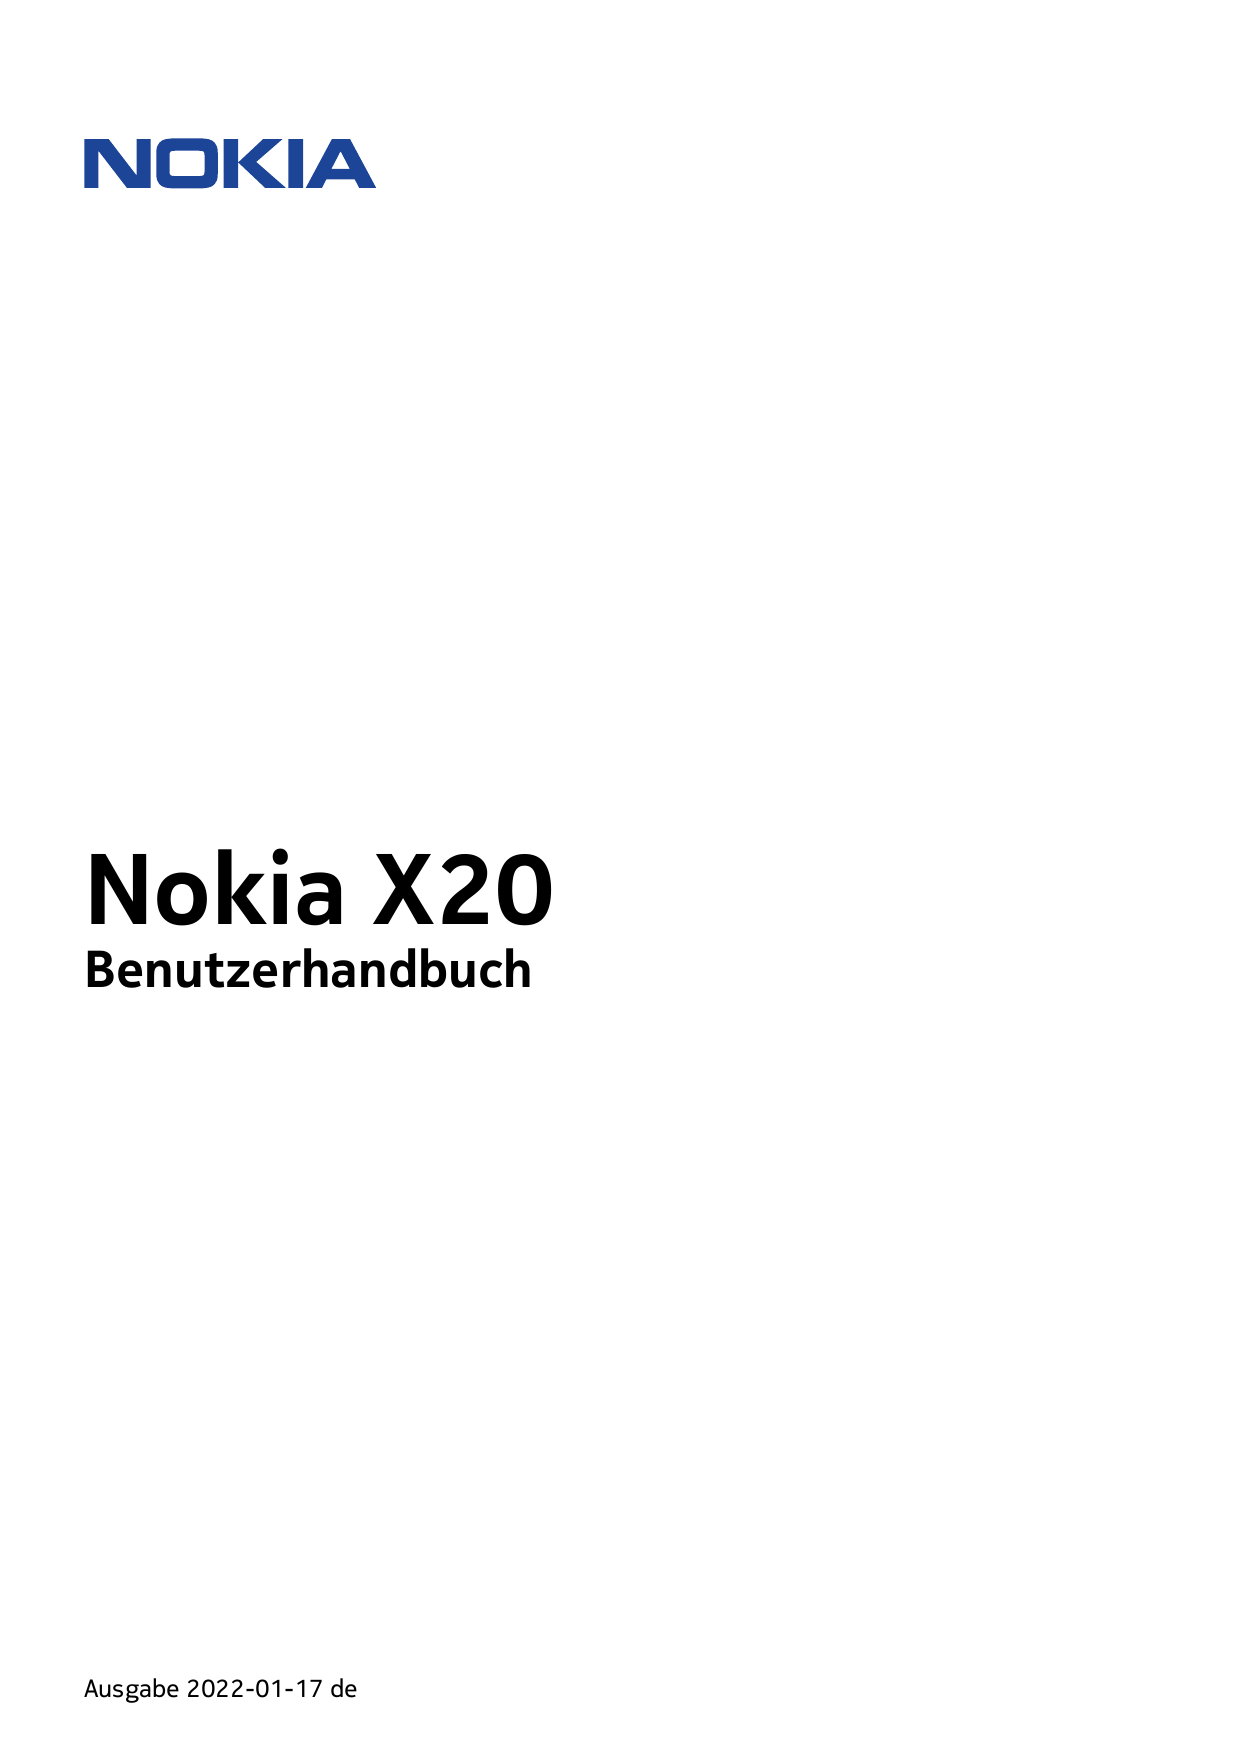 Nokia X20BenutzerhandbuchAusgabe 2022-01-17 de